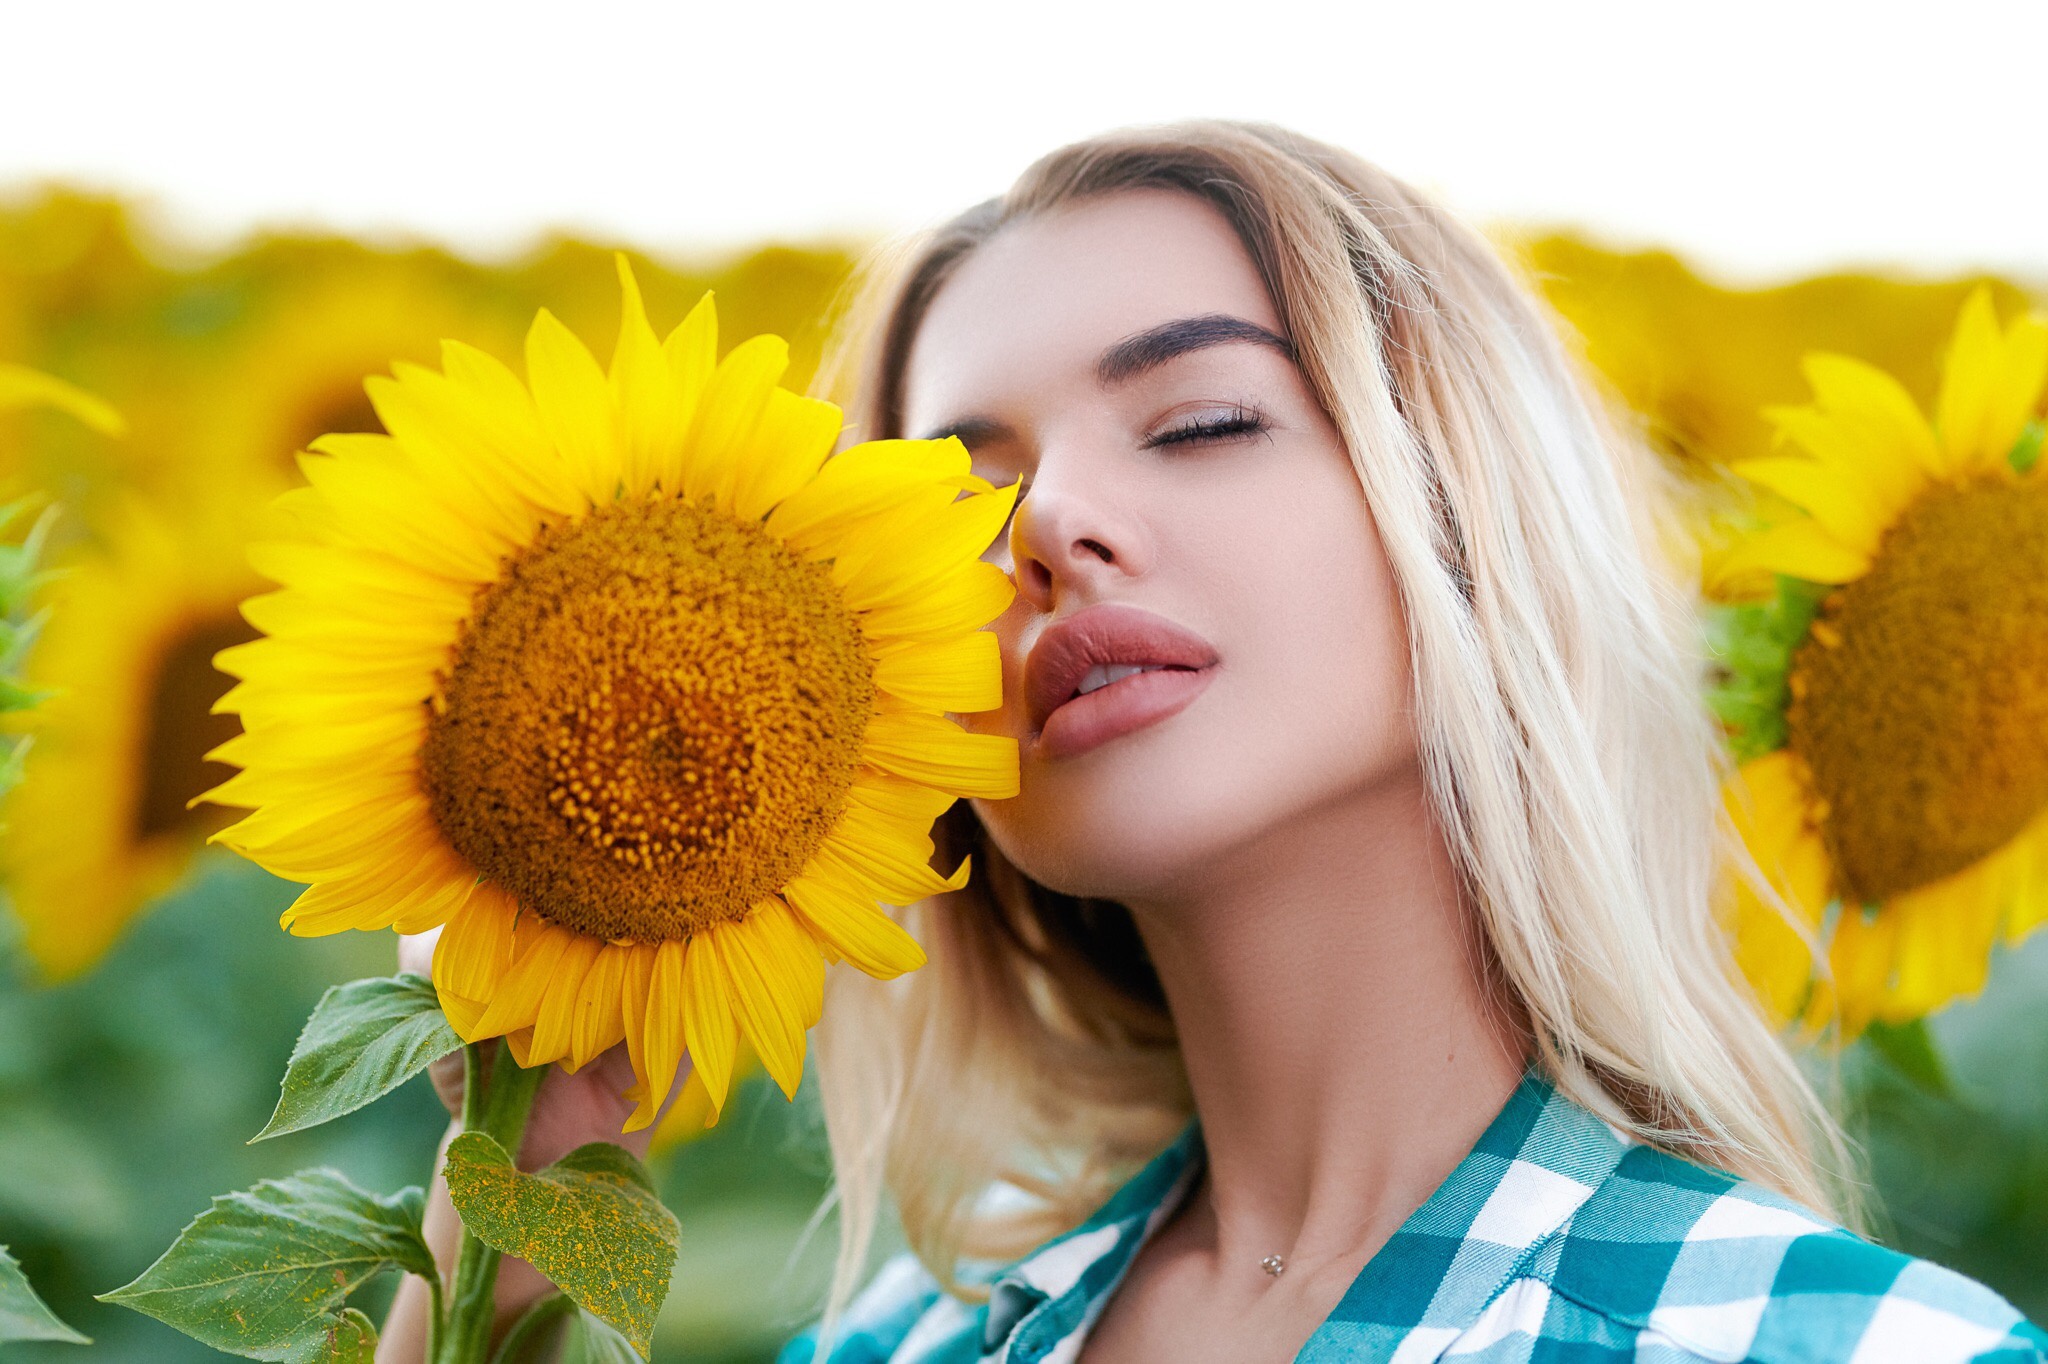 Women Model Face Closeup Sunflowers Flowers Yellow Flower Plants Dyed Hair Women Outdoors Plaid Shir 2048x1364